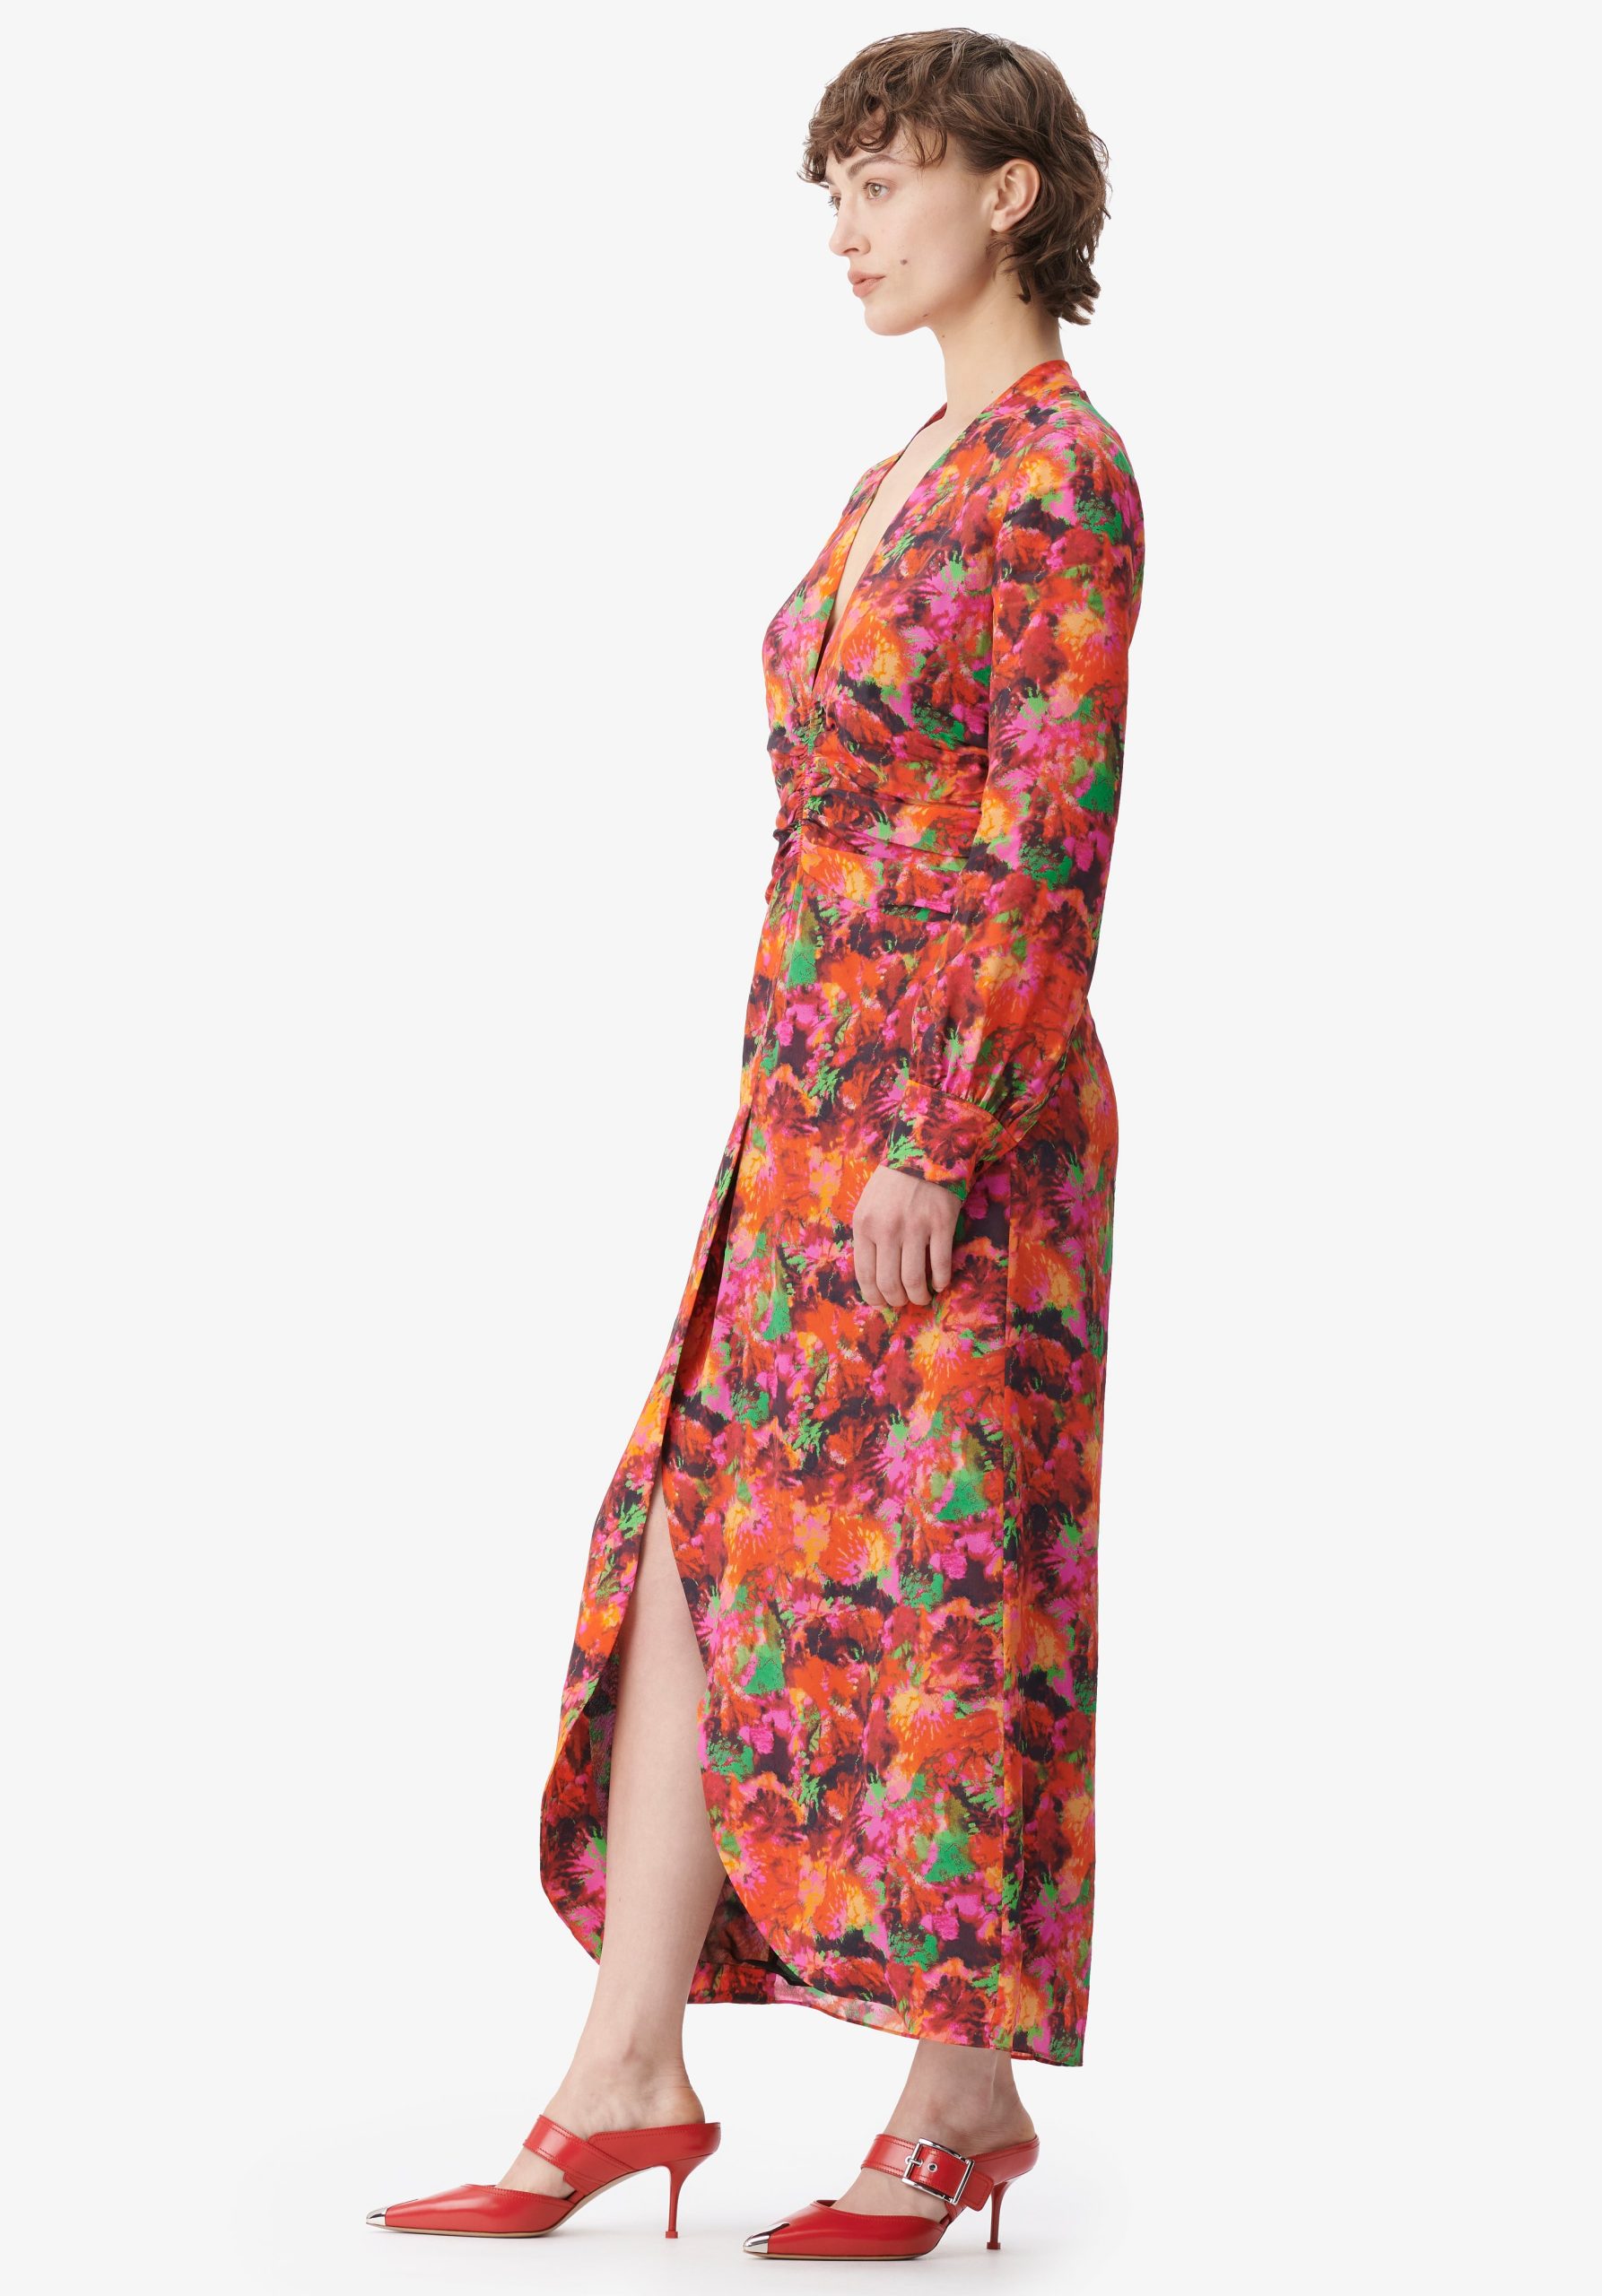 Kleider Lieferung Shibori Flower Damen Lala Berlin Dress Damala – 2